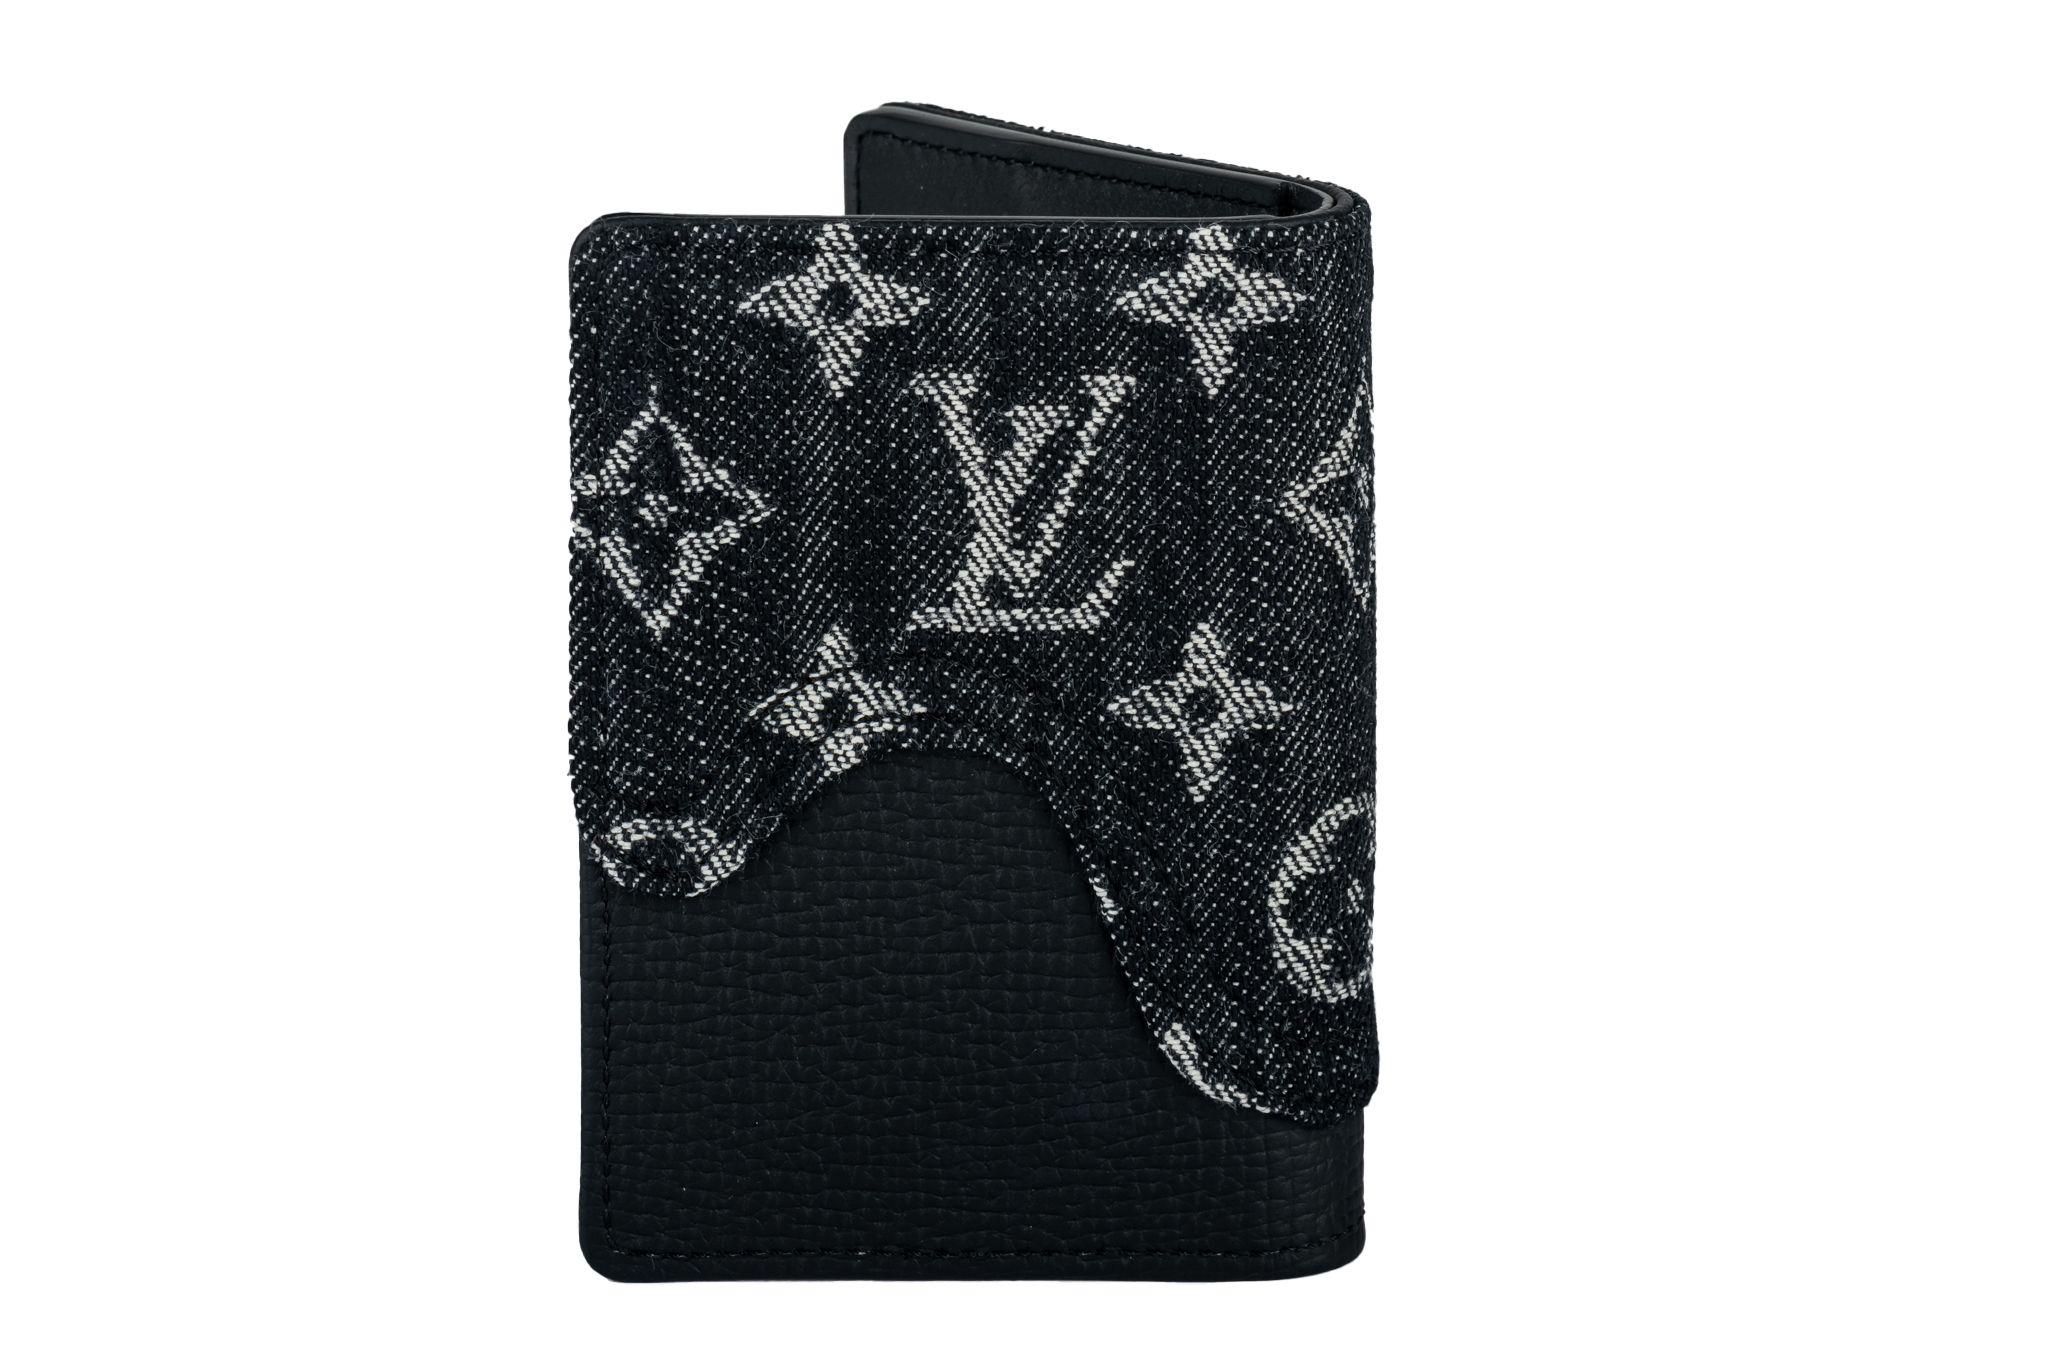 Louis Vuitton Virgil Abloh x NIGO Black Monogram Denim Drip und Taurillon Pocket Organizer aus dem Jahr 2021. Dieses Stück ist mit schwarzem Leder gefüttert und wurde in Zusammenarbeit mit dem japanischen Künstler NIGO entworfen. Sie hat mehrere